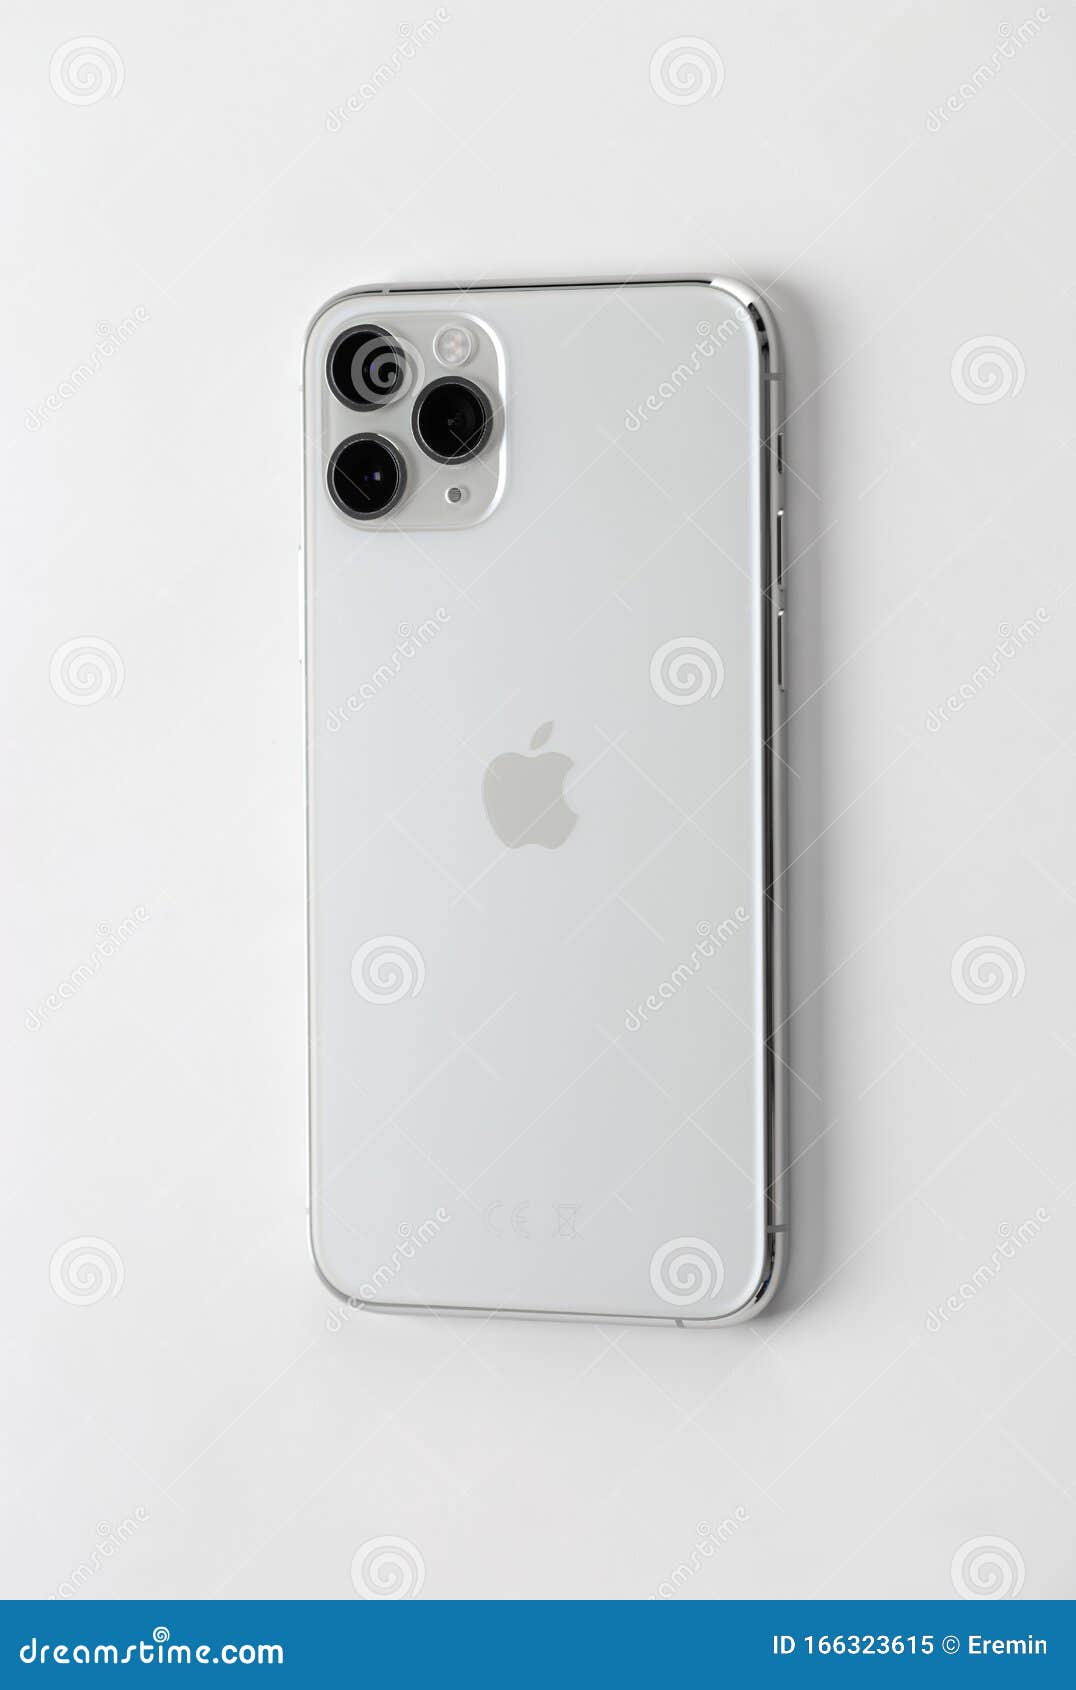 Chiếc iPhone bạc trên nền trắng sẽ khiến bạn cảm thấy đẳng cấp và vẻ đẹp tinh tế. Hình ảnh liên quan sẽ khiến bạn không thể chối từ và đón chào sự kết hợp tuyệt vời giữa màu bạc và trắng, tạo nên một vẻ ngoài sang trọng và tinh tế.